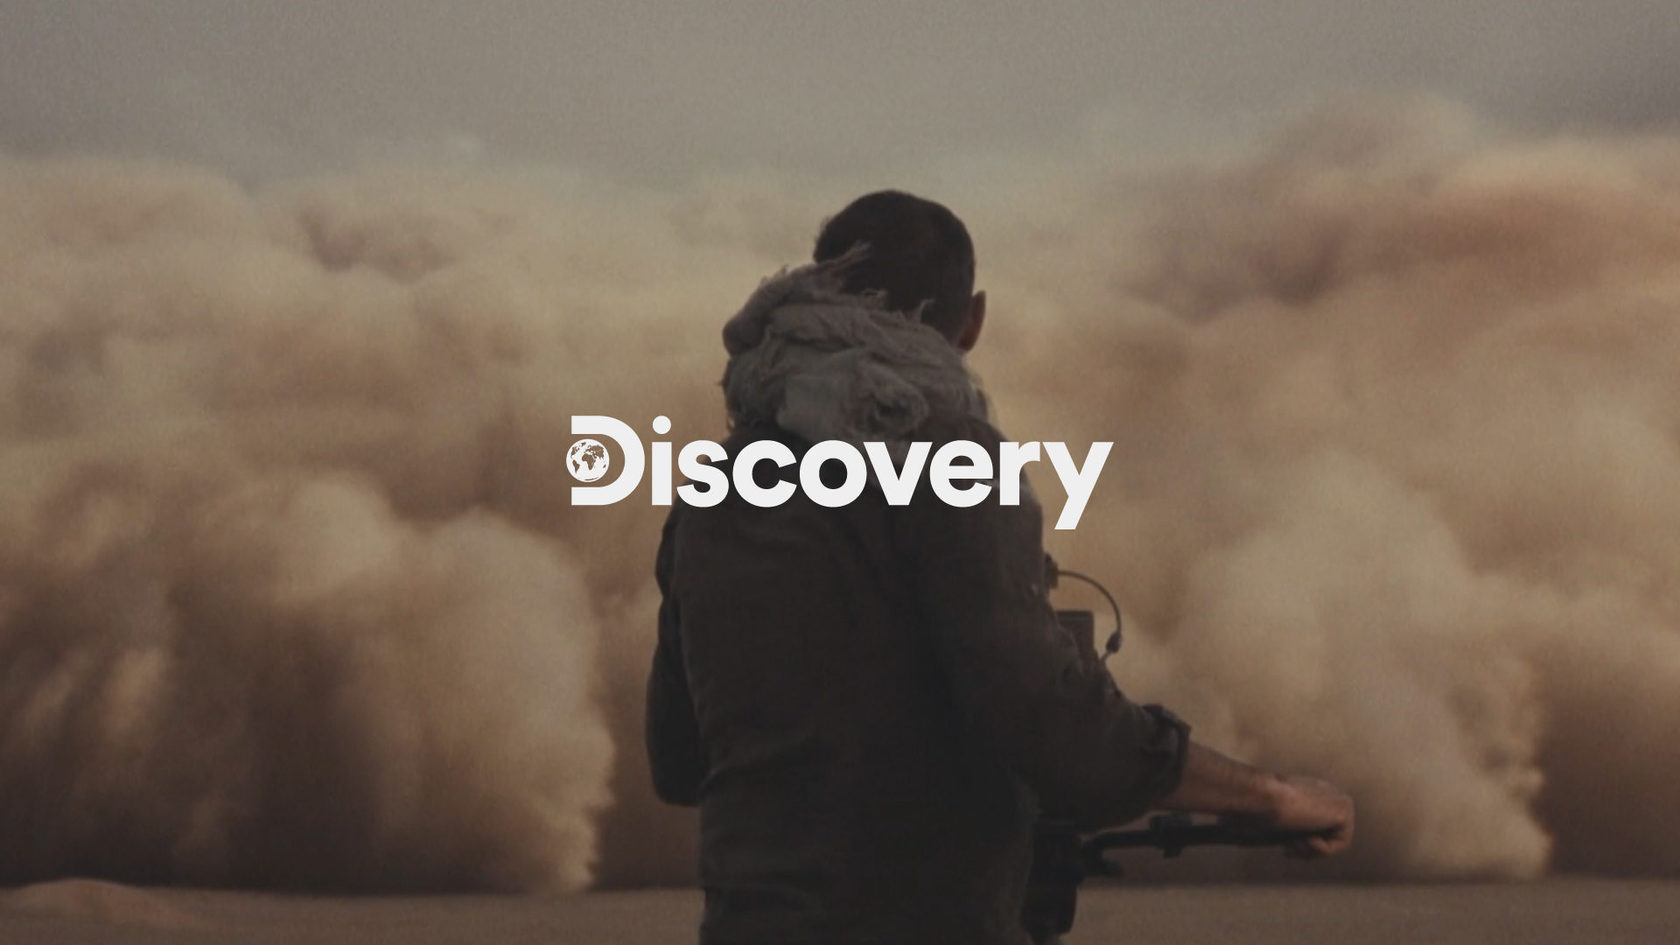 Обновление логотипа и фирменного стиля для телеканала Discovery